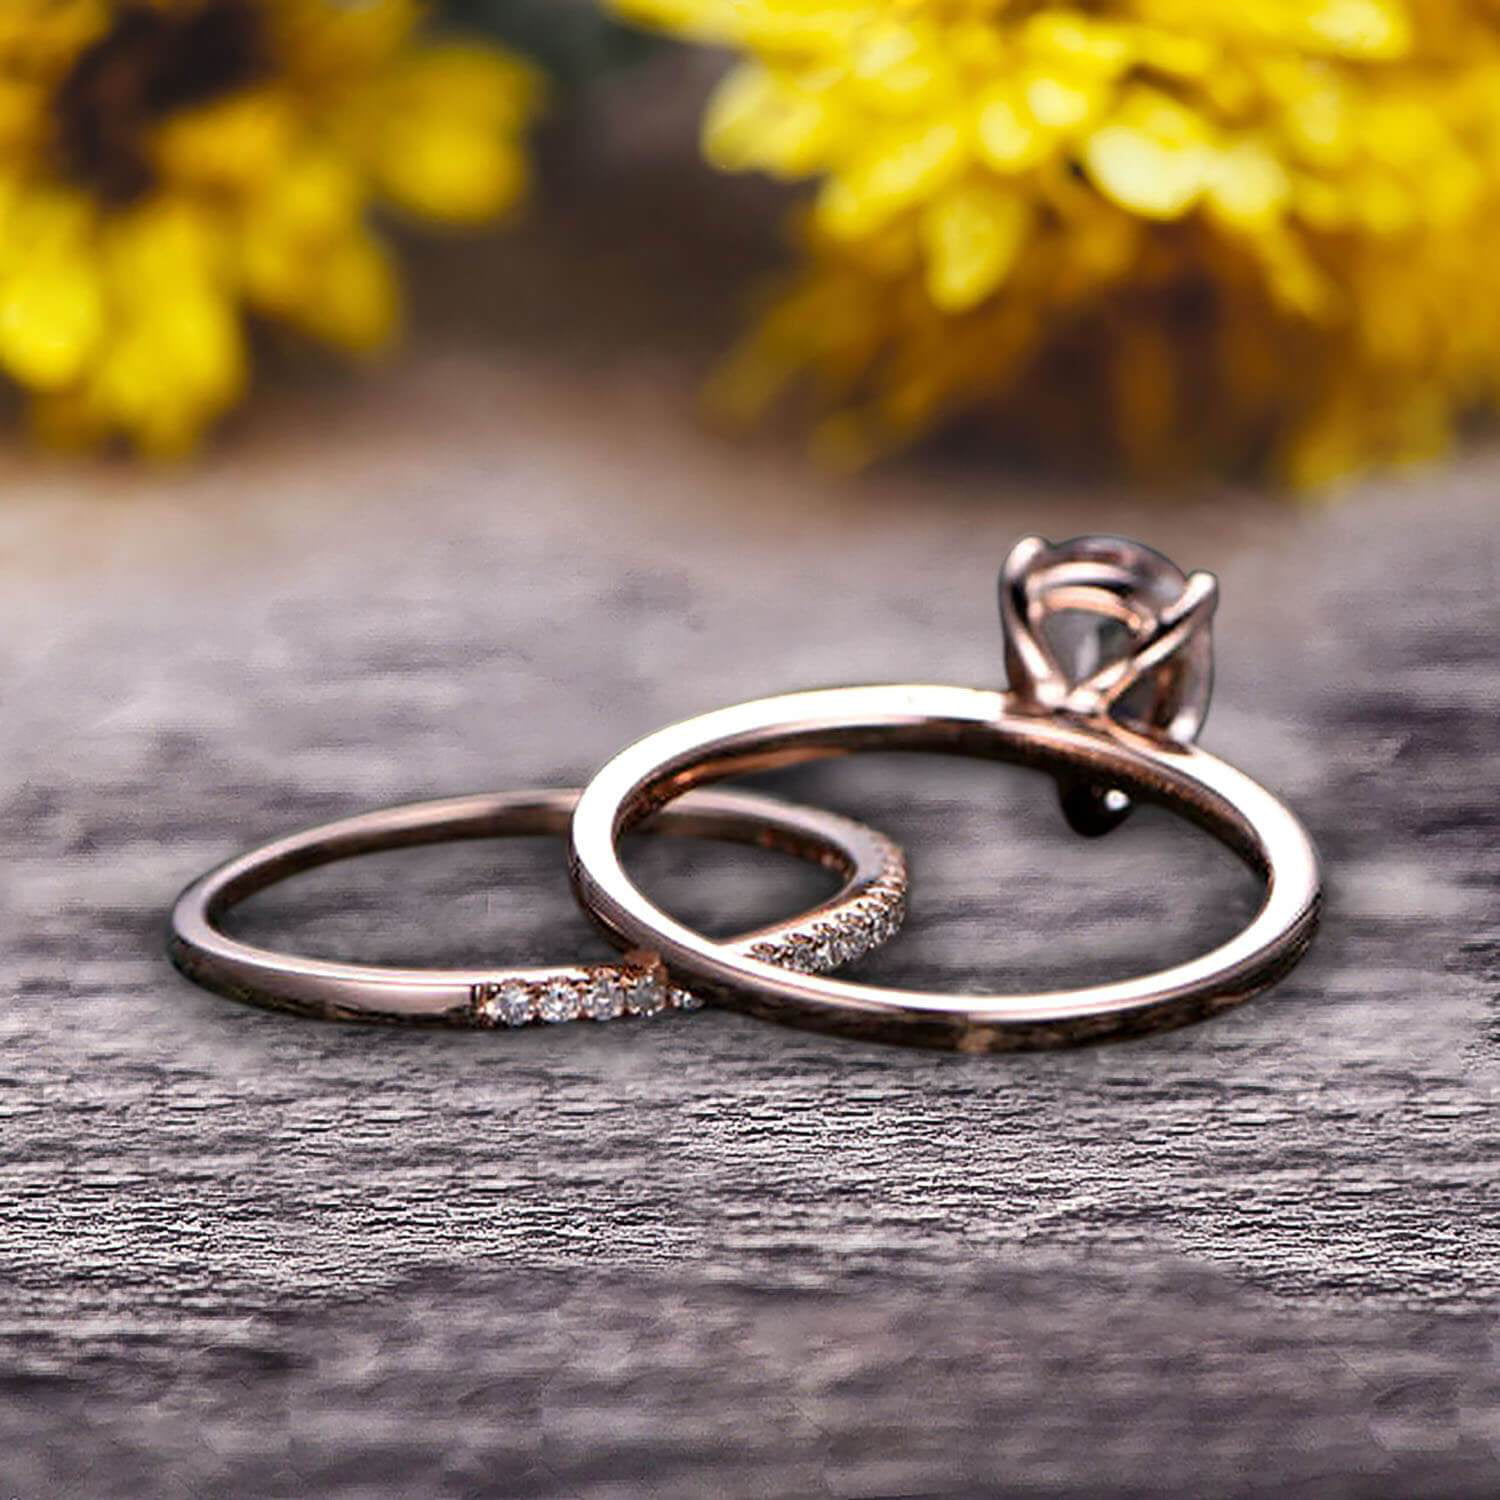 Wedding Ring Gold - Free photo on Pixabay - Pixabay